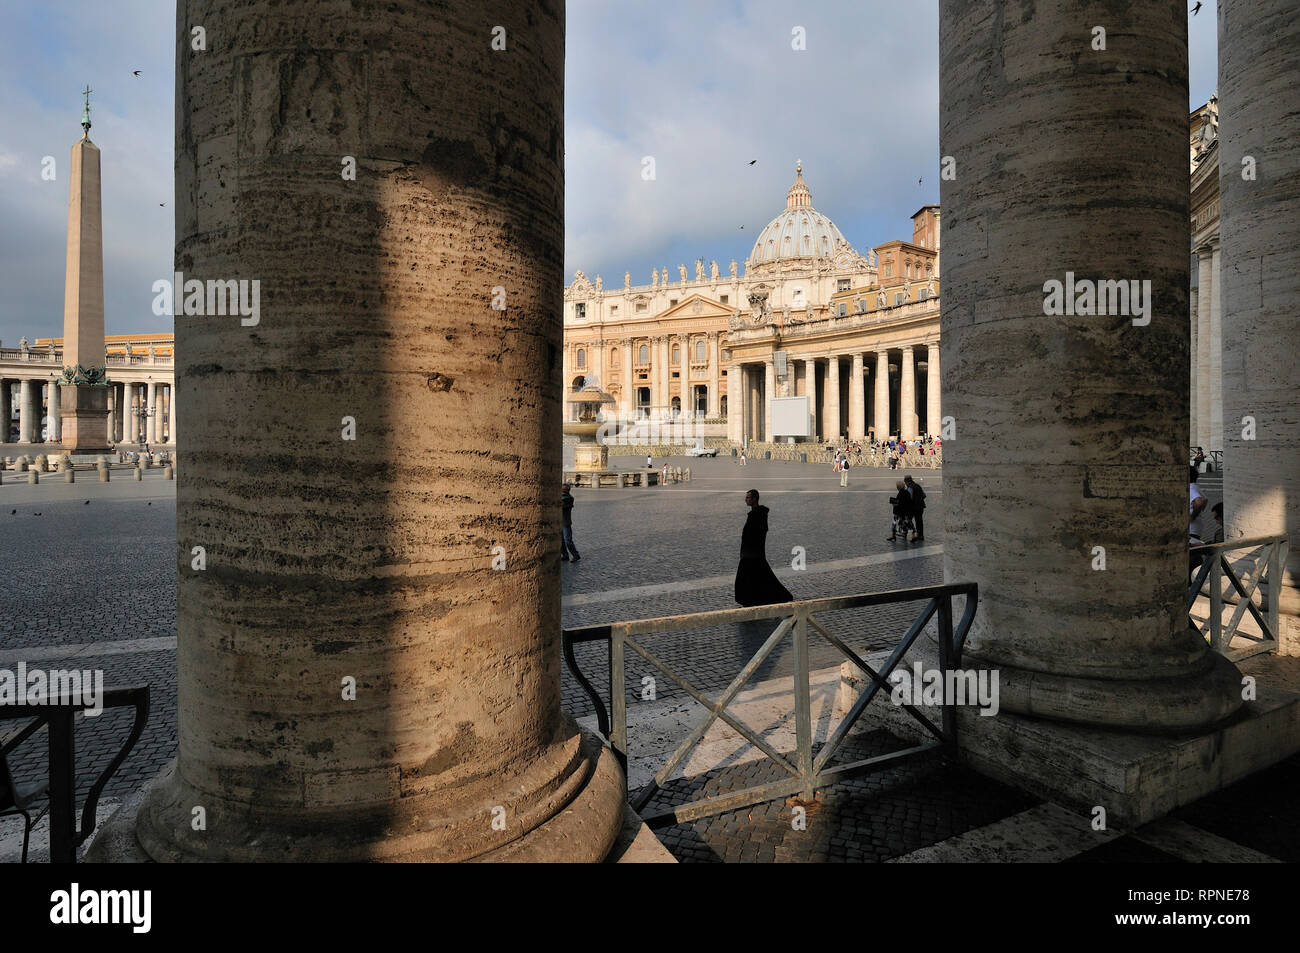 Rome. L'Italie. Colonnade du Bernin et Basilica di San Pietro, Piazza San Pietro (Place Saint-Pierre). Banque D'Images